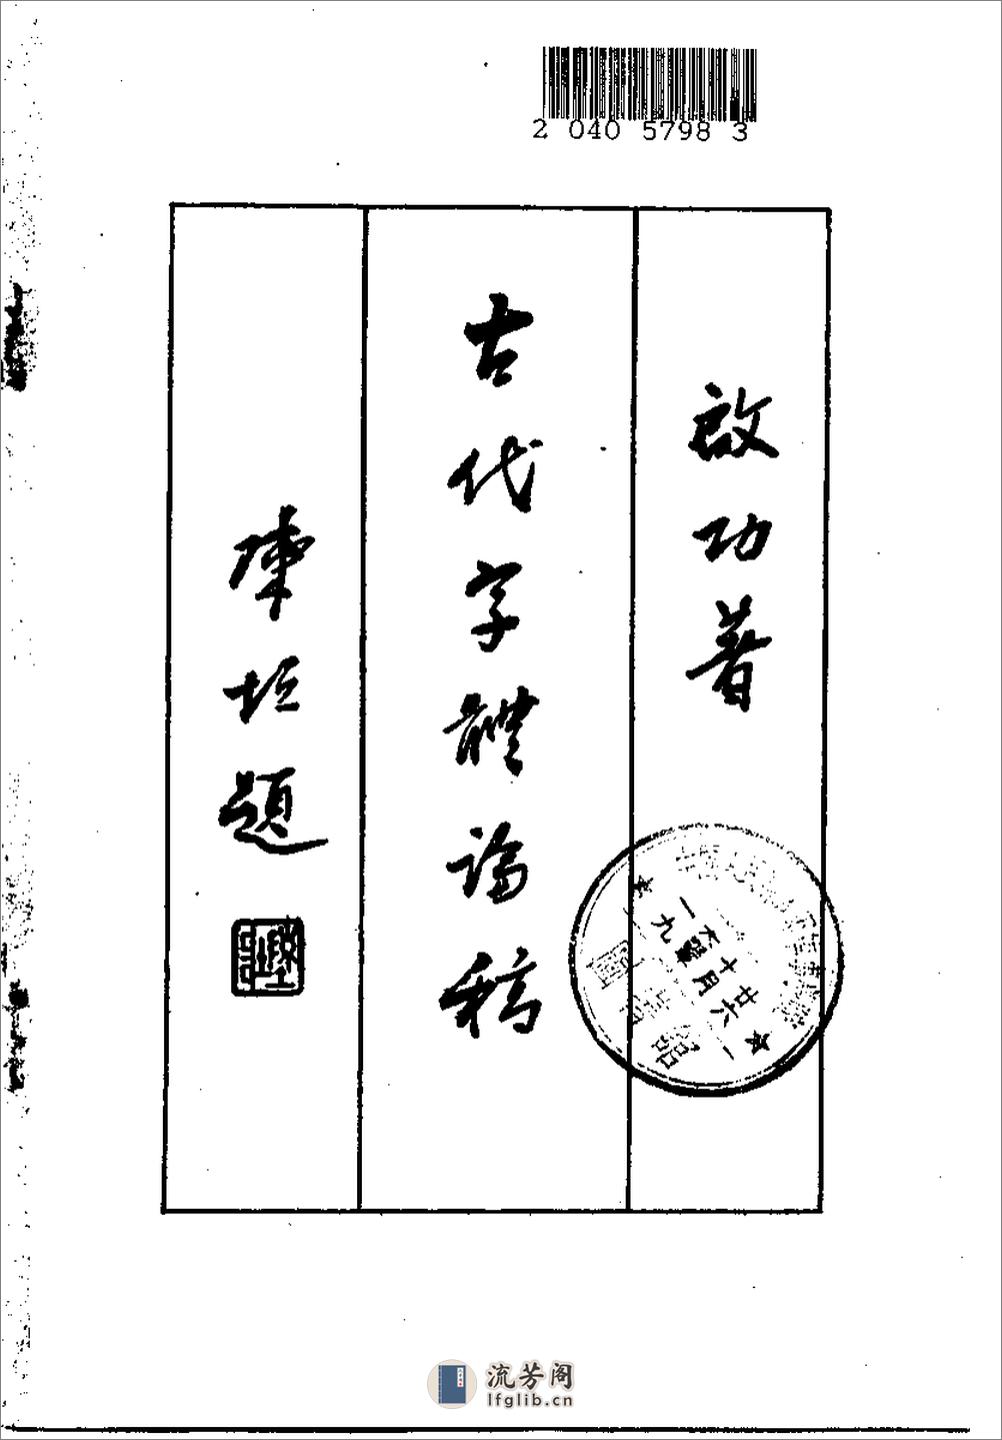 《古代字体论稿》_启功 著_文物出版社 1964年 - 第2页预览图